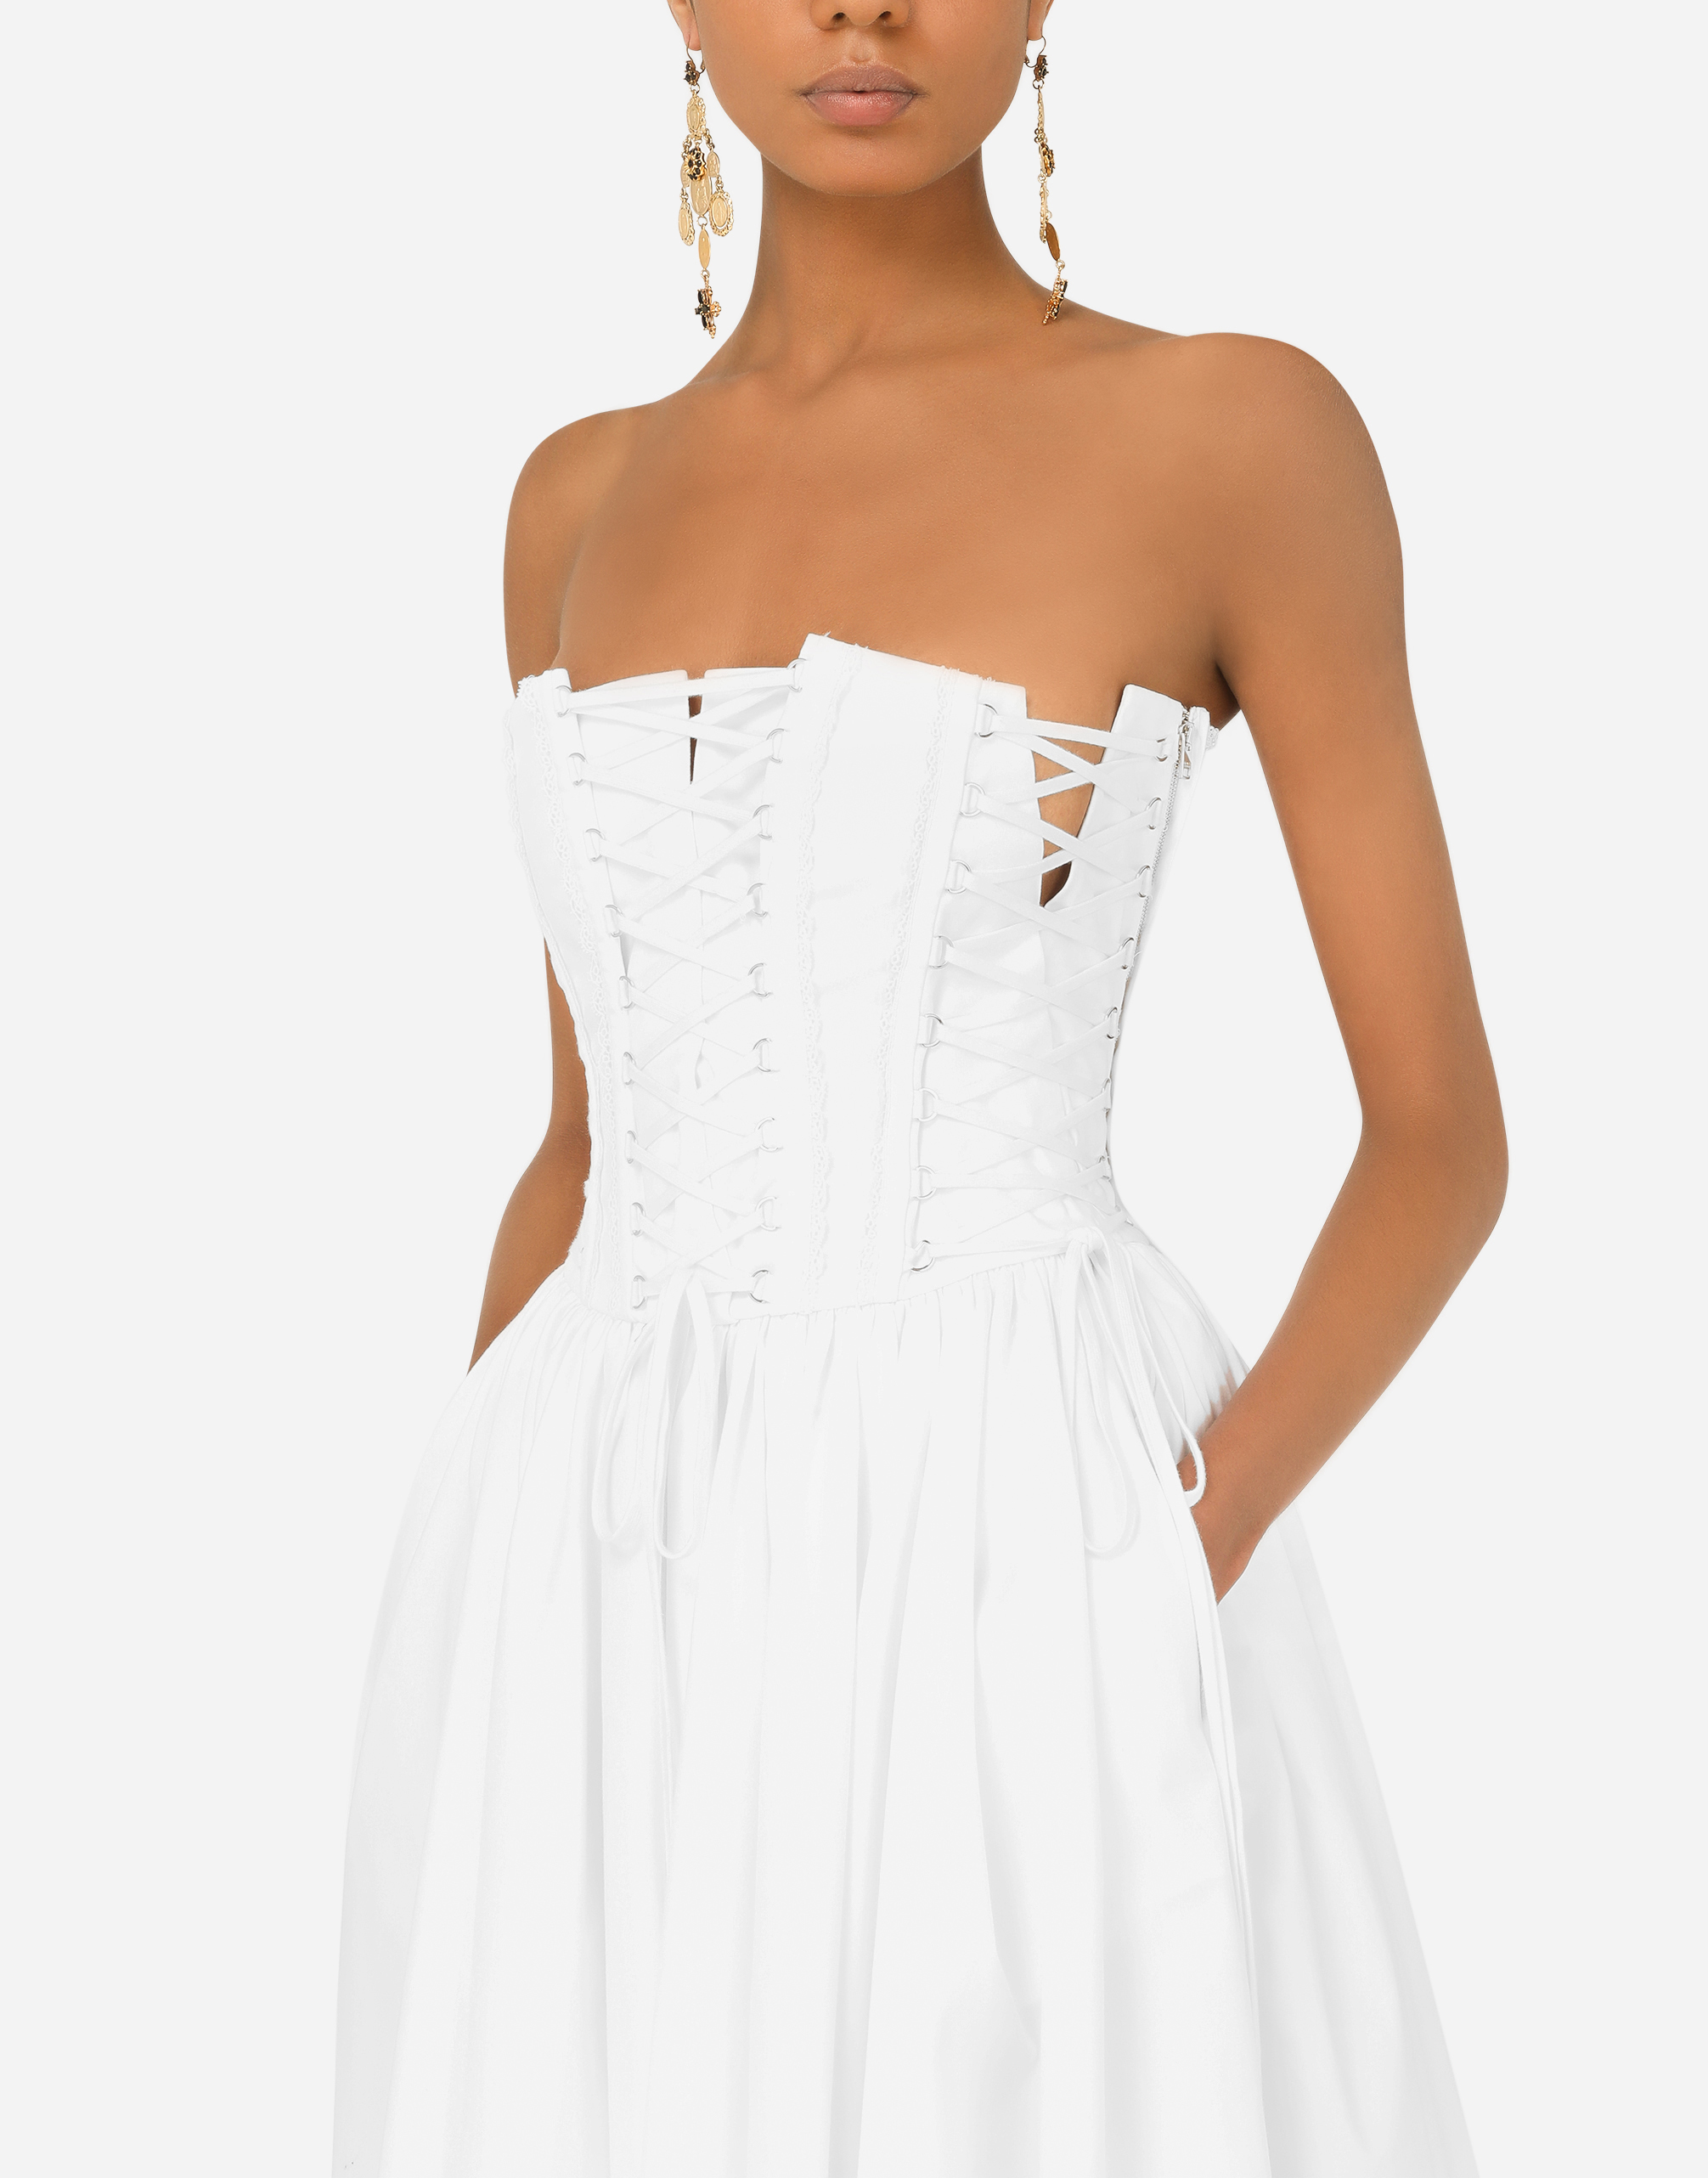 Vestito midiDolce & Gabbana in Satin di colore Bianco Donna Abbigliamento da Abiti da Abiti casual e da giorno 